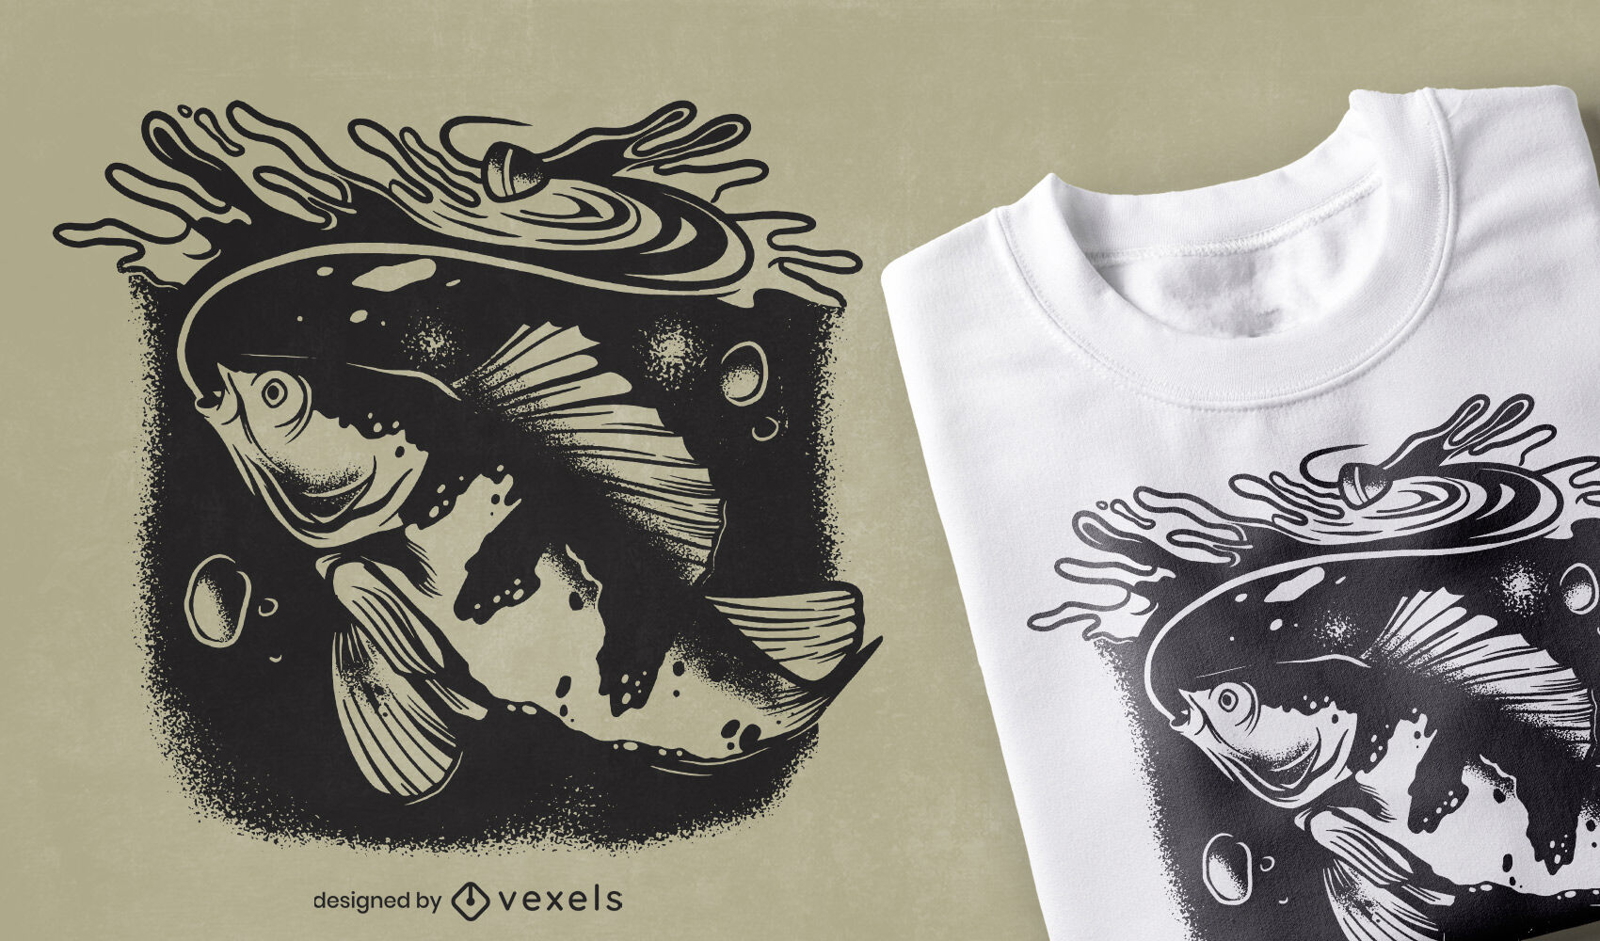 Diseño de camiseta de animales submarinos de peces.